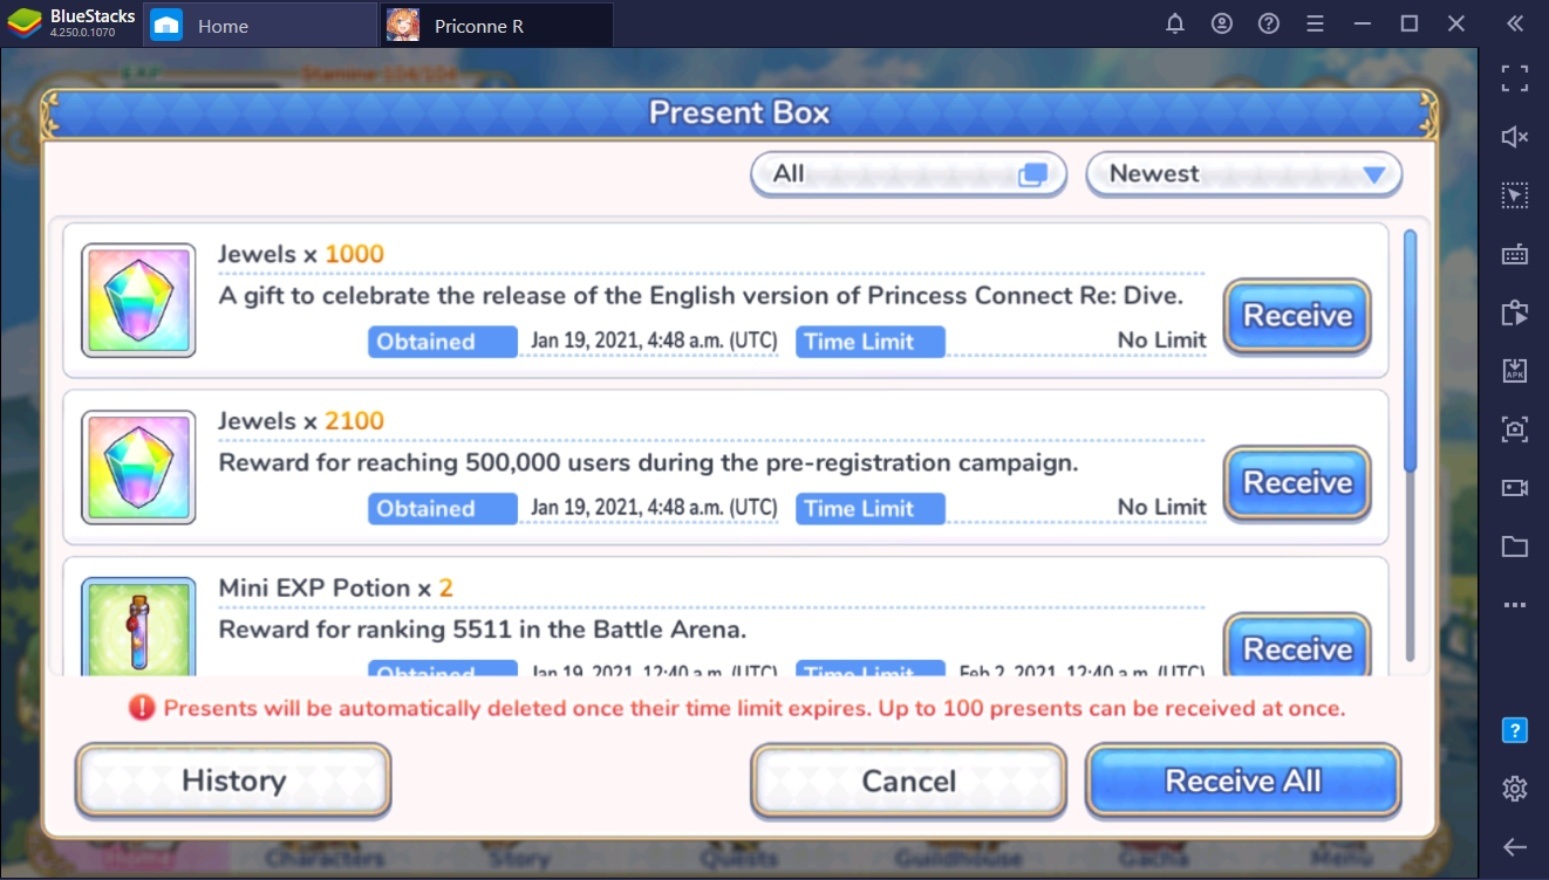 Princess Connect! Re:Dive phát hành bản quốc tế, tổ chức sự kiện hấp dẫn